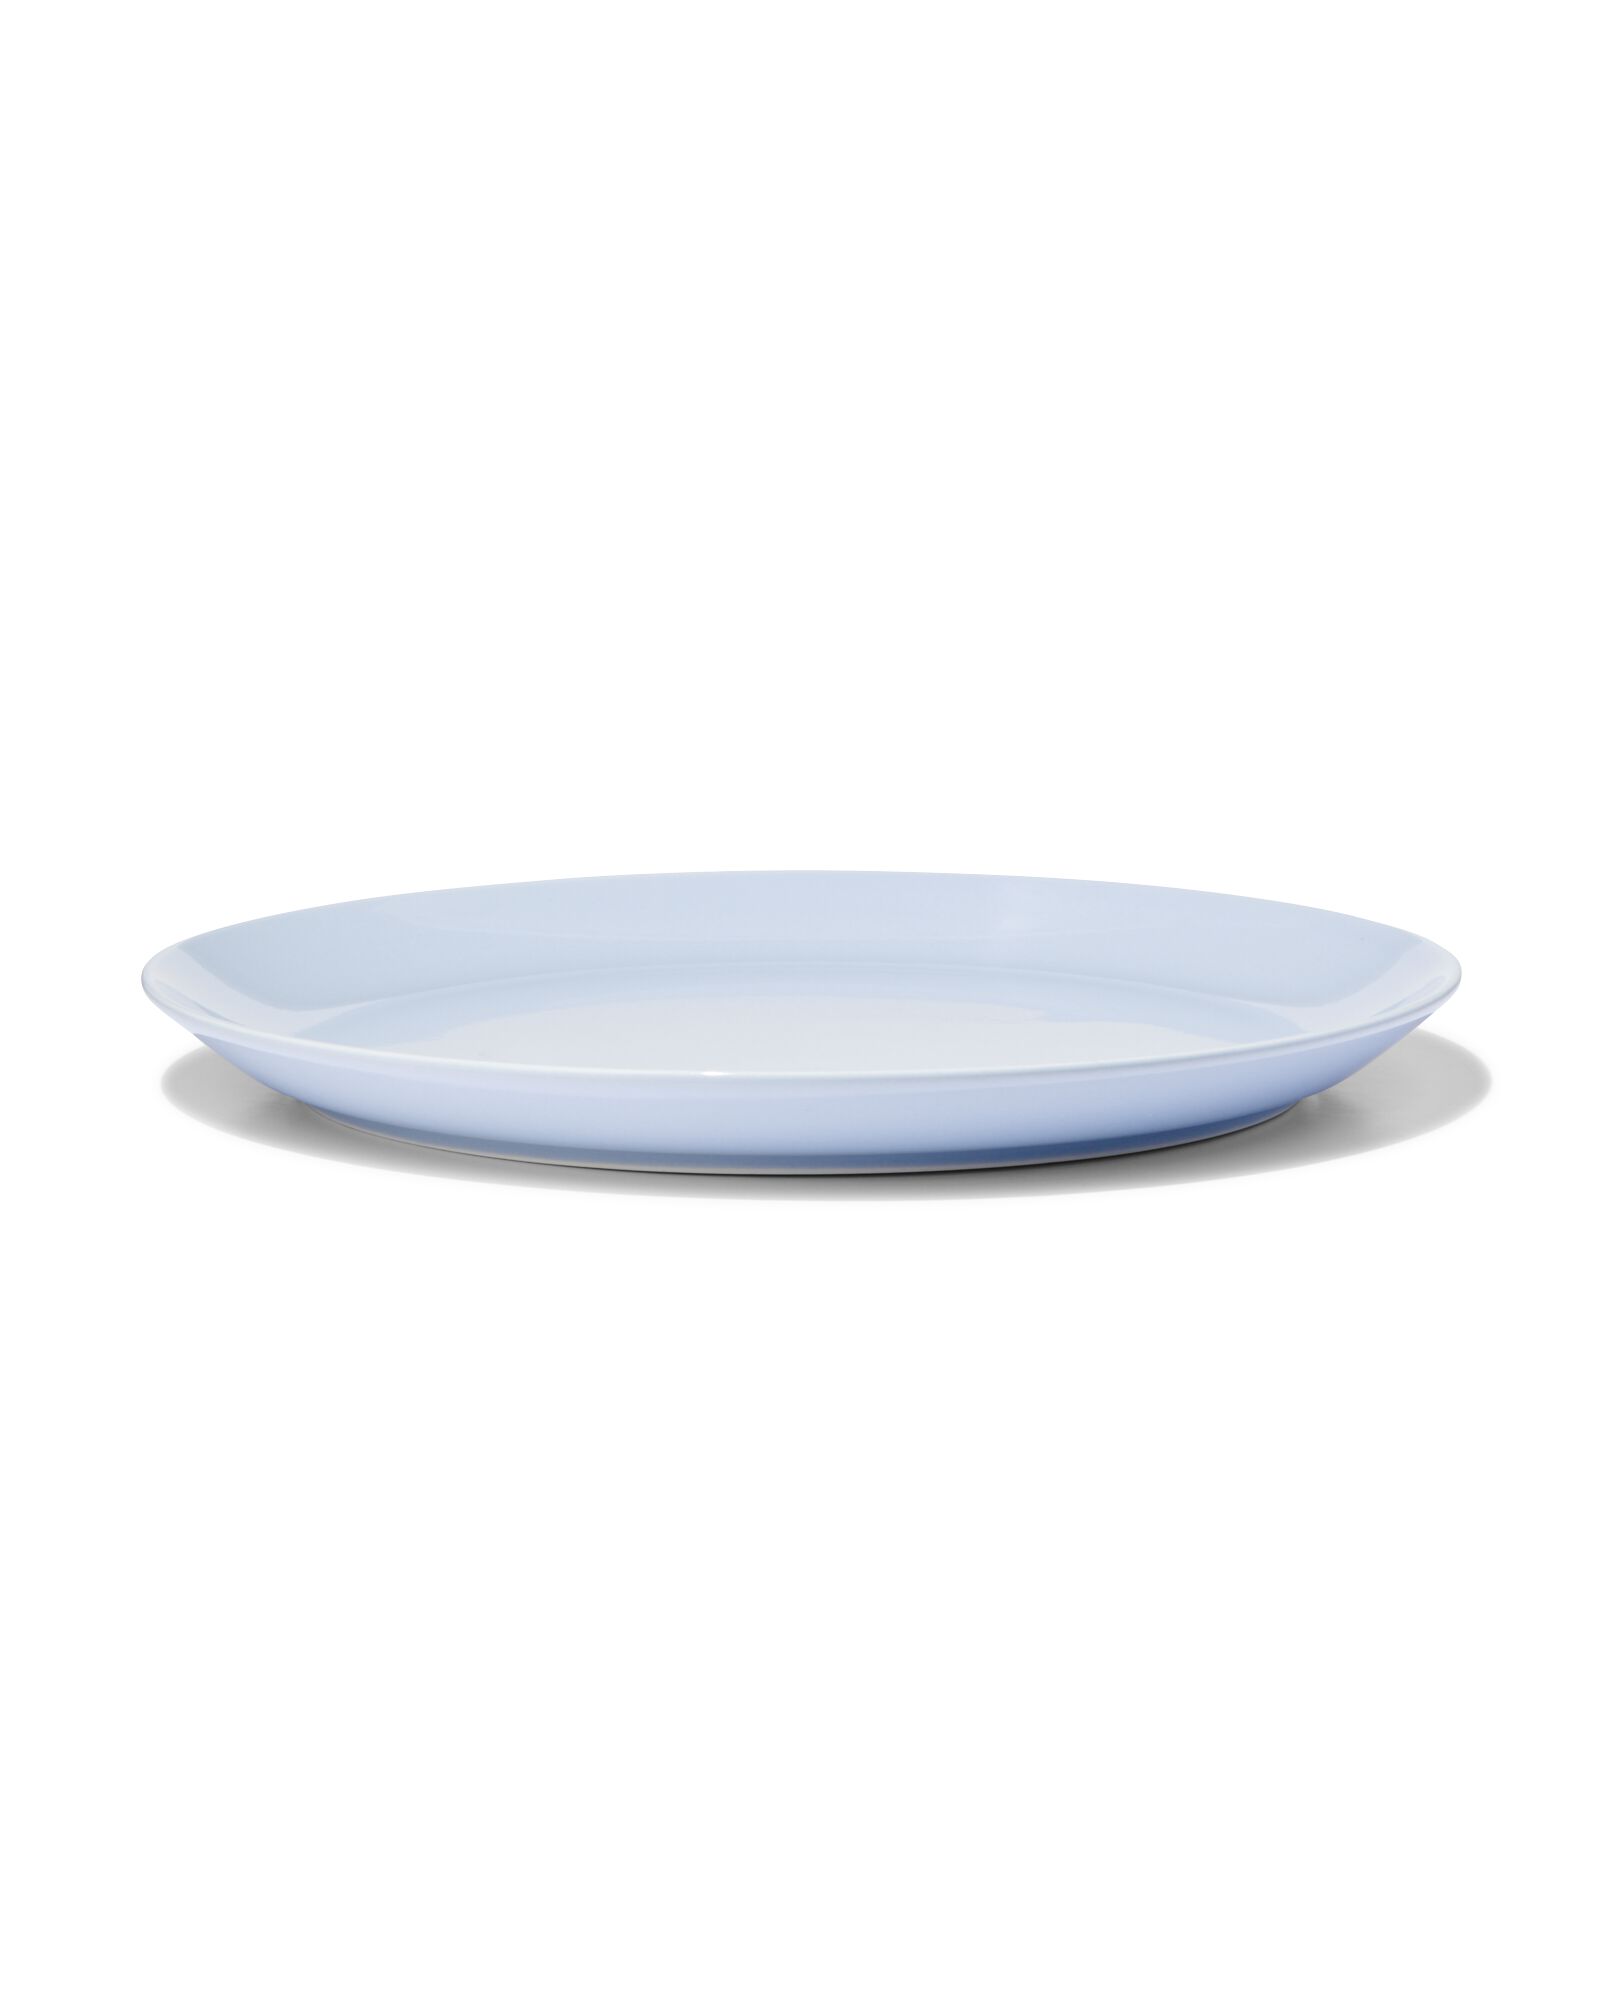 hema assiette plate ø26cm - new bone bleu - vaisselle dépareillée (bleu clair)